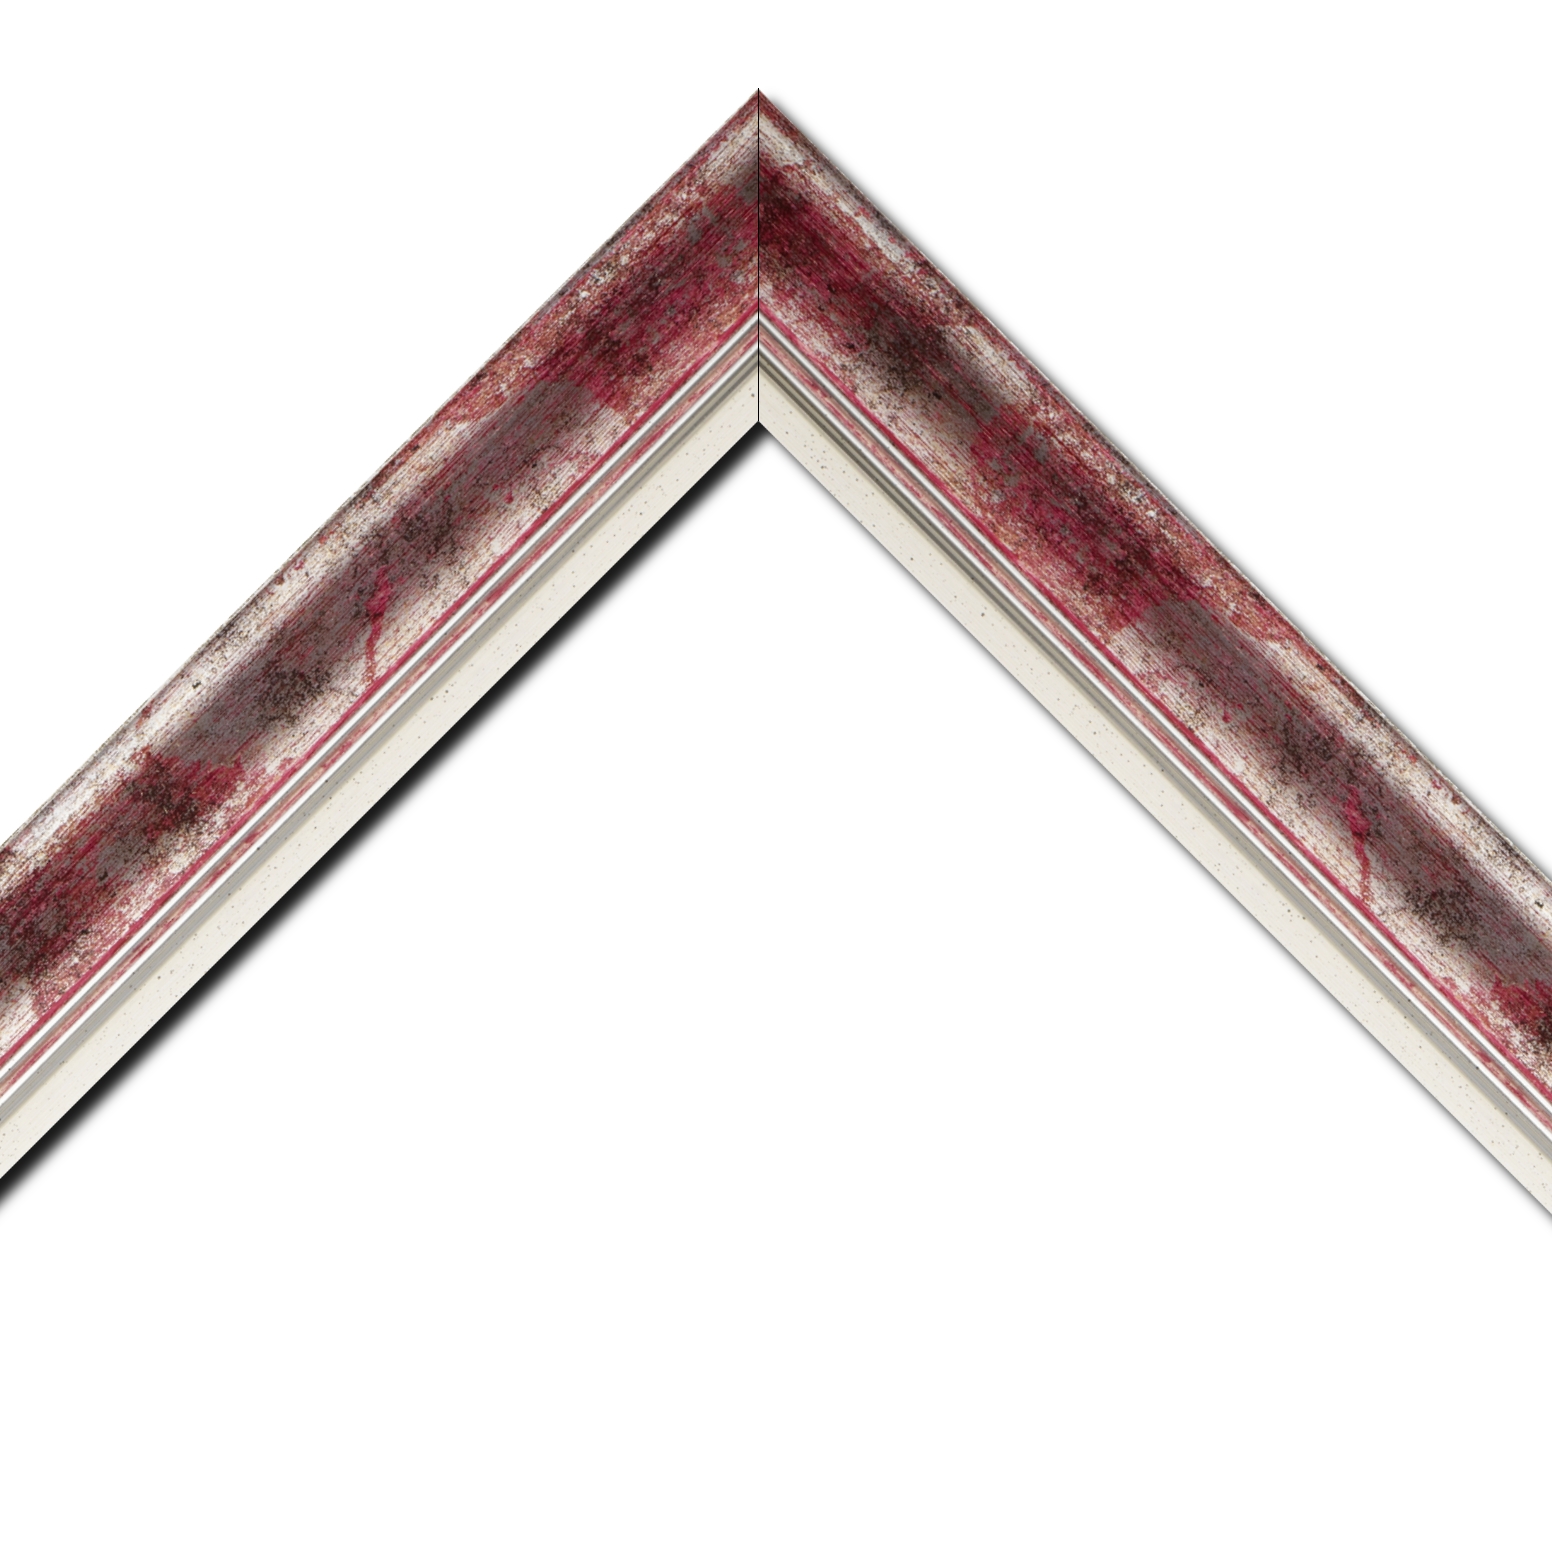 Baguette bois profil incurvé largeur 5.7cm de couleur rose fushia fond argent marie louise blanche mouchetée filet argent intégré